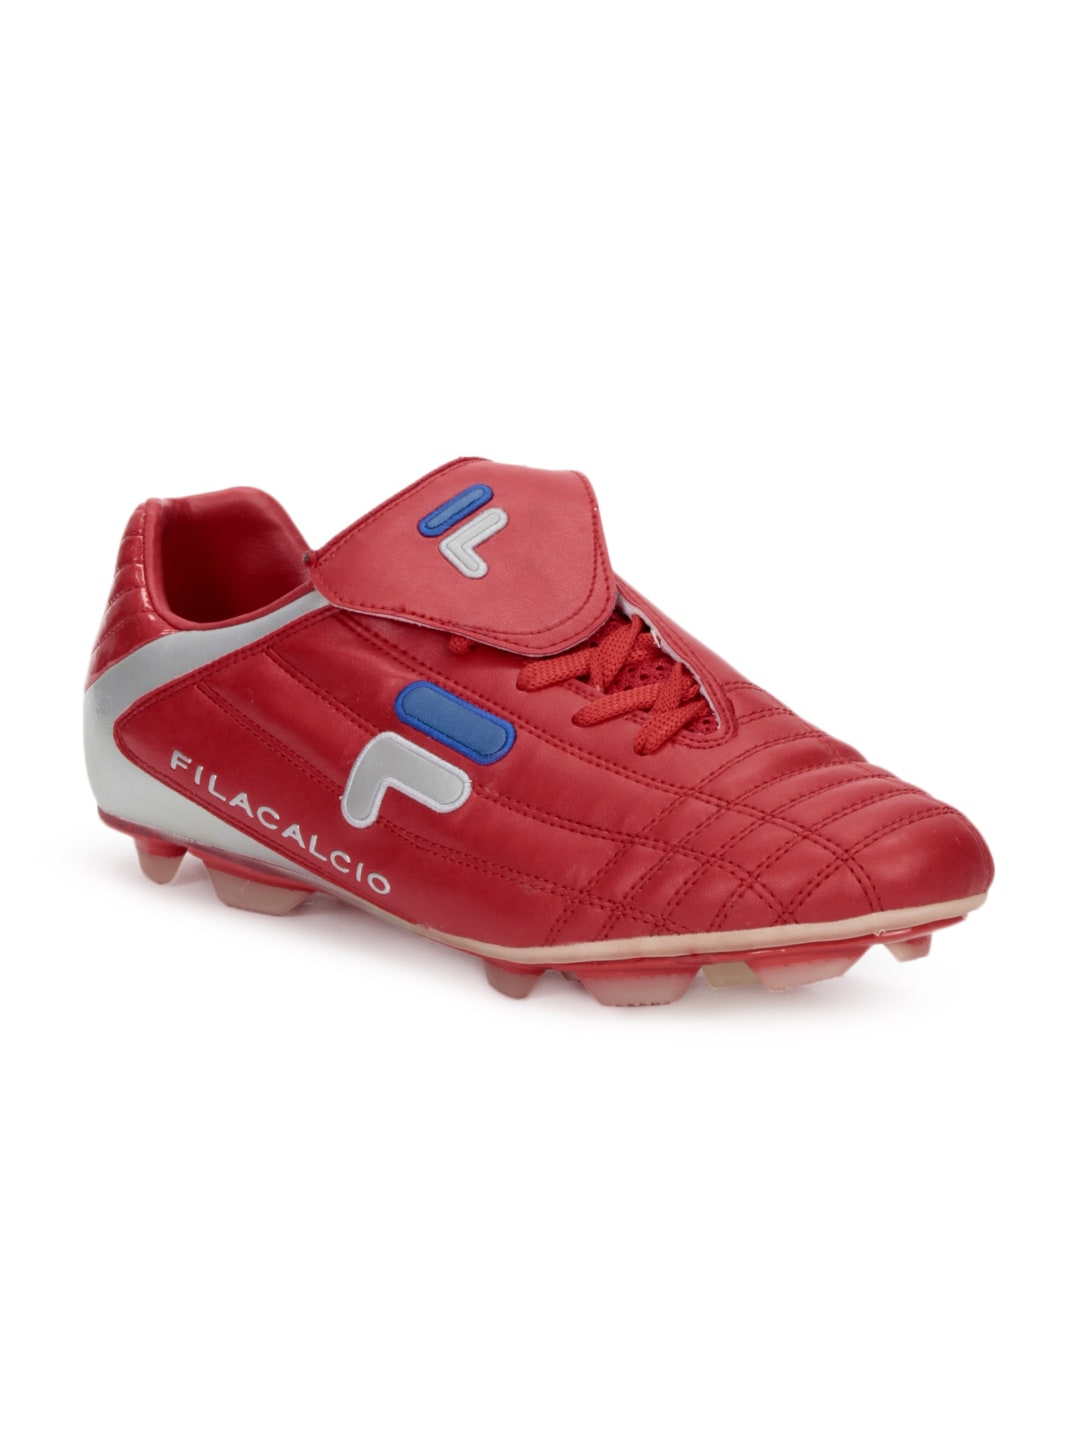 Fila Men Calcio Red Sports Shoes